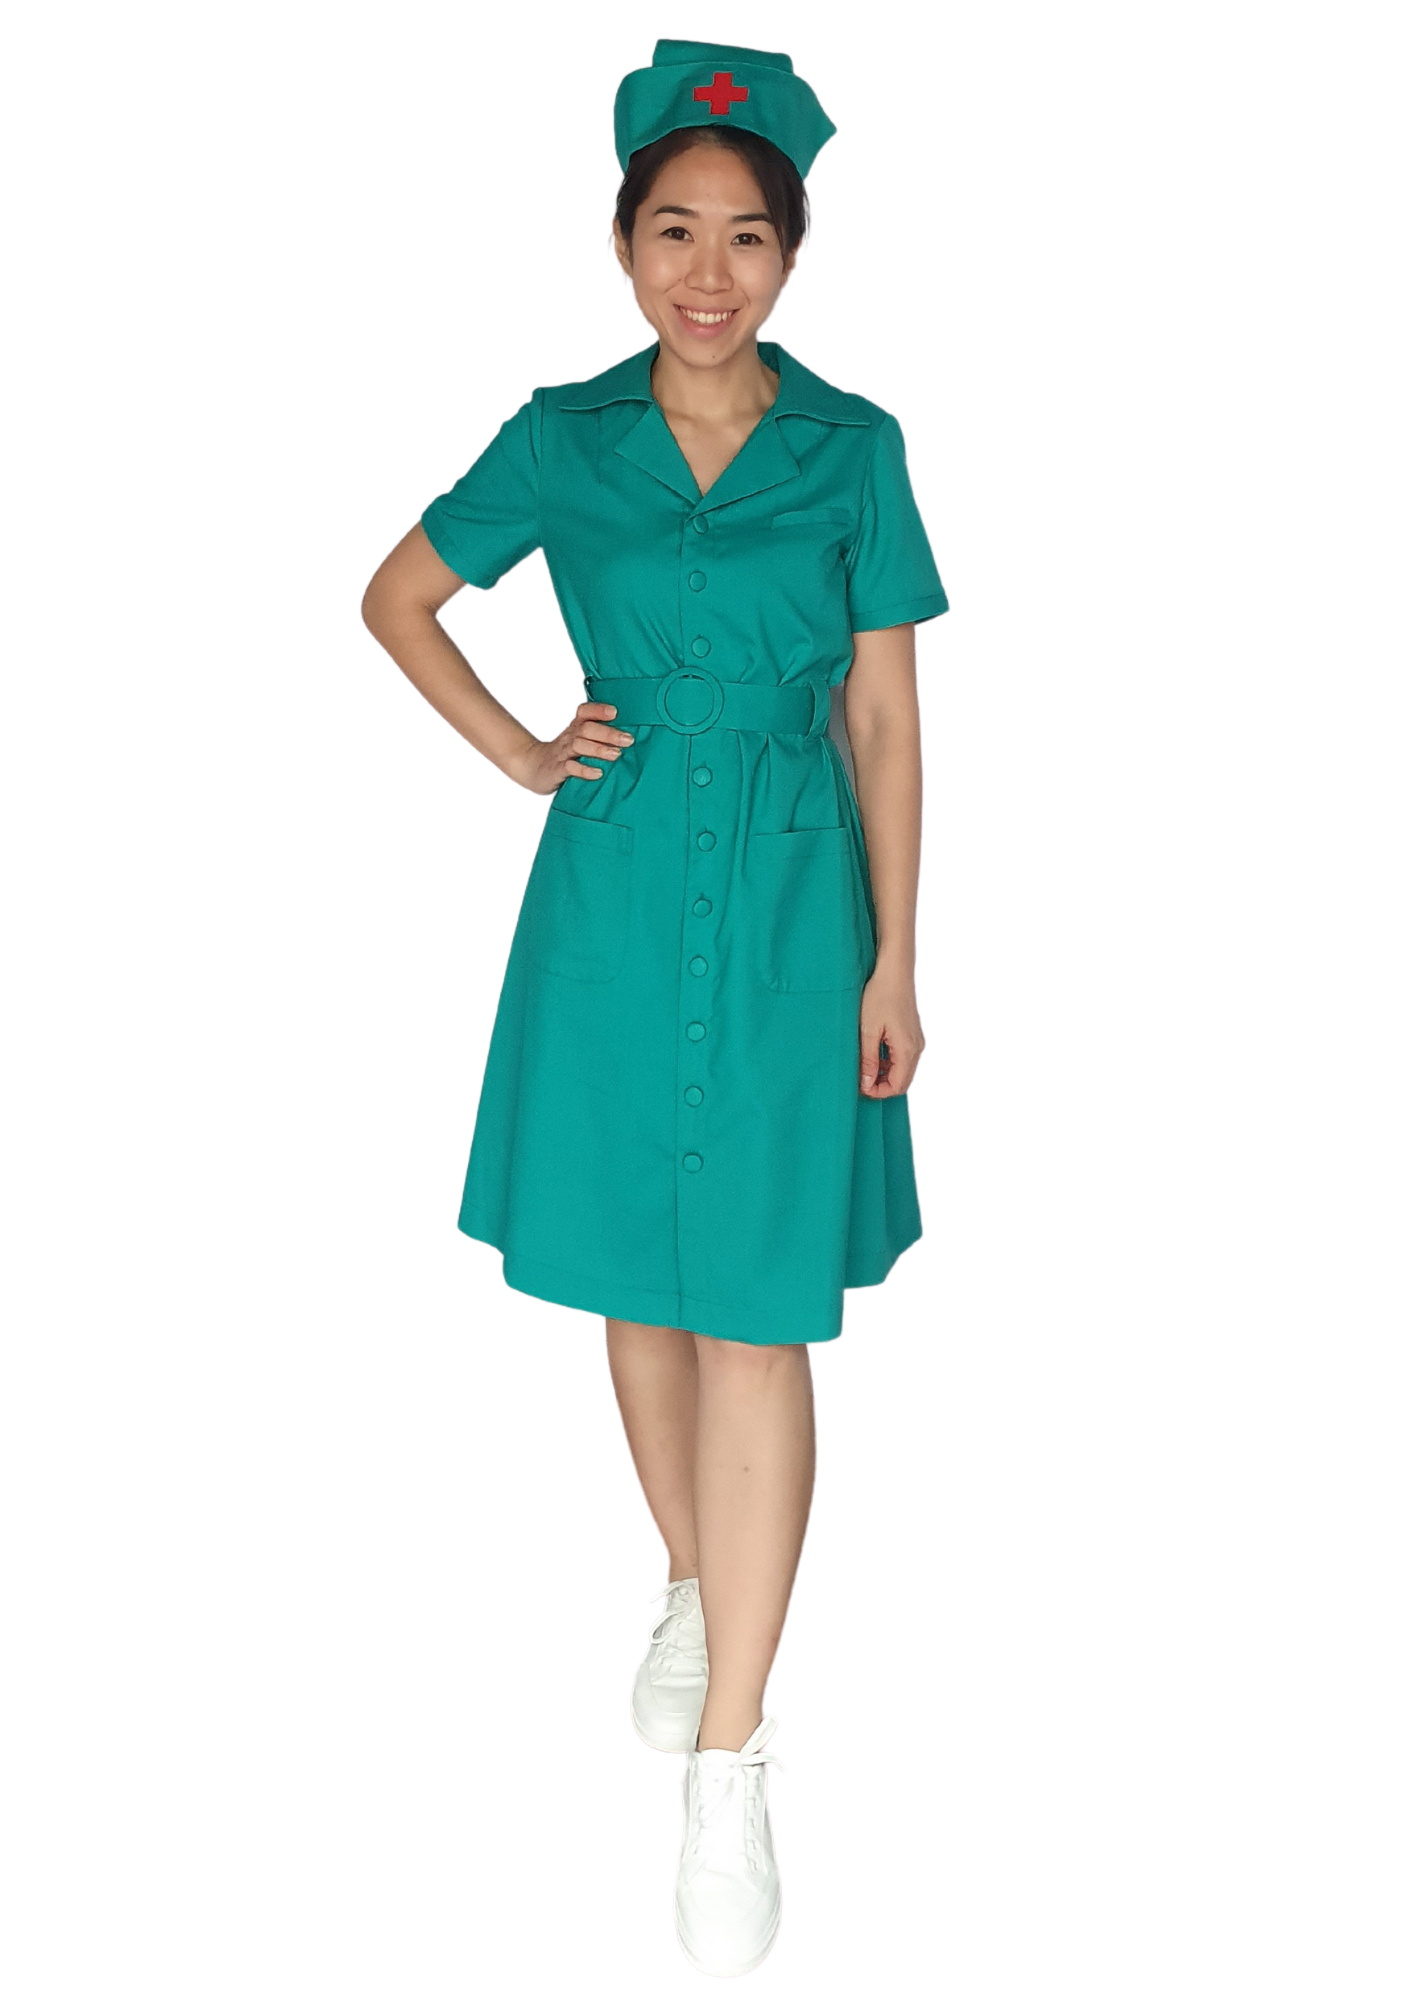 Olden Day Nurse N01